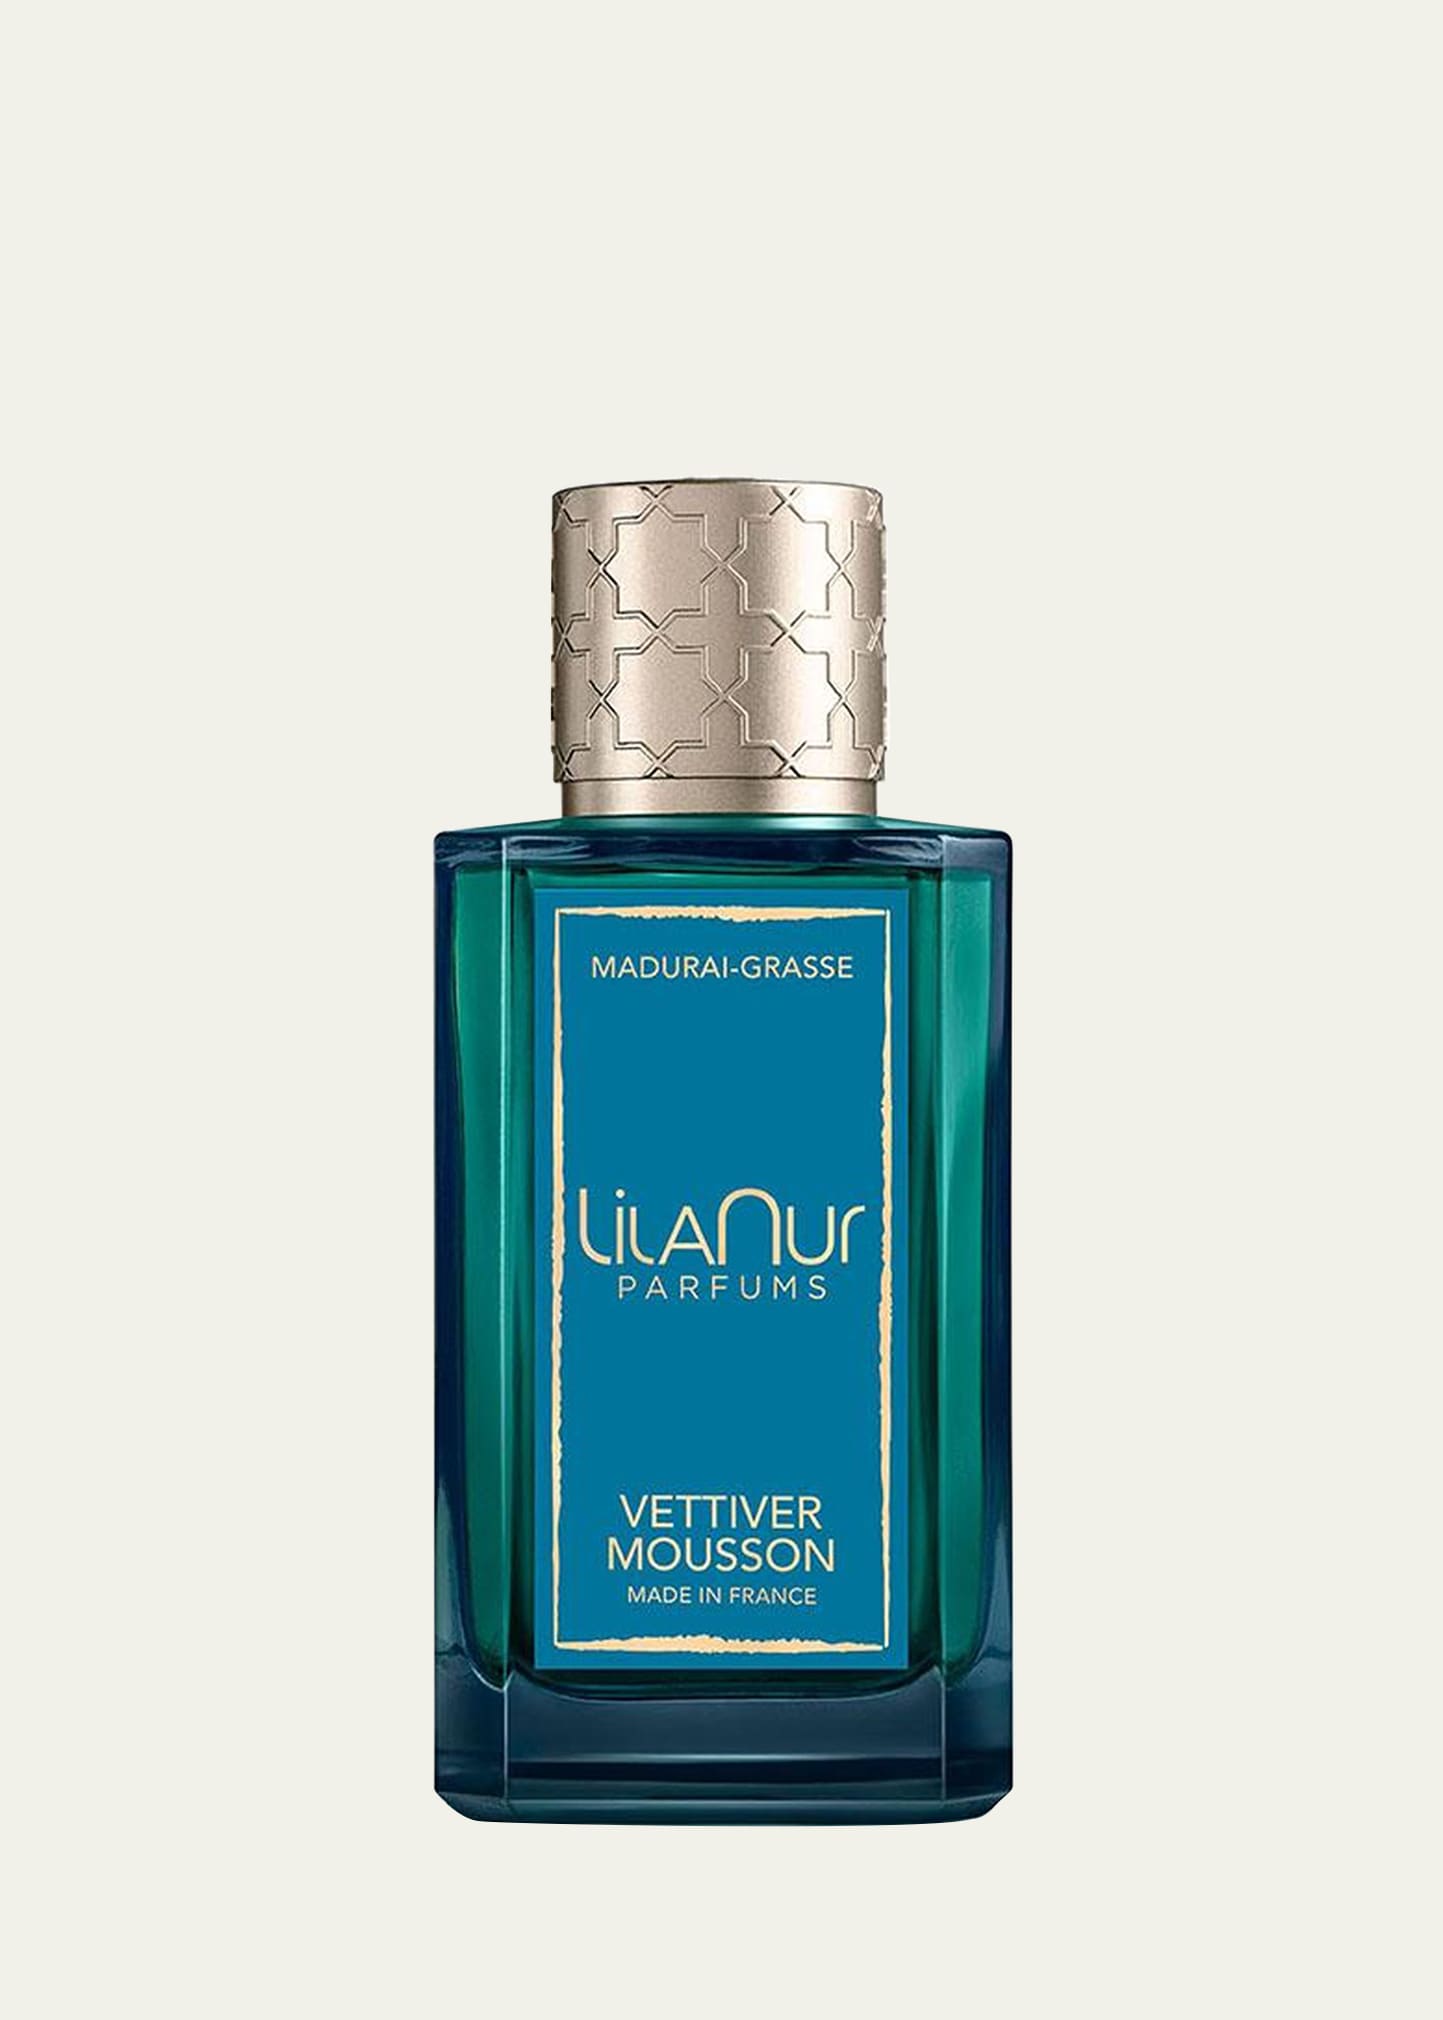 LilaNur Parfums Vettiver Mousson Eau de Parfum, 3.4 oz.